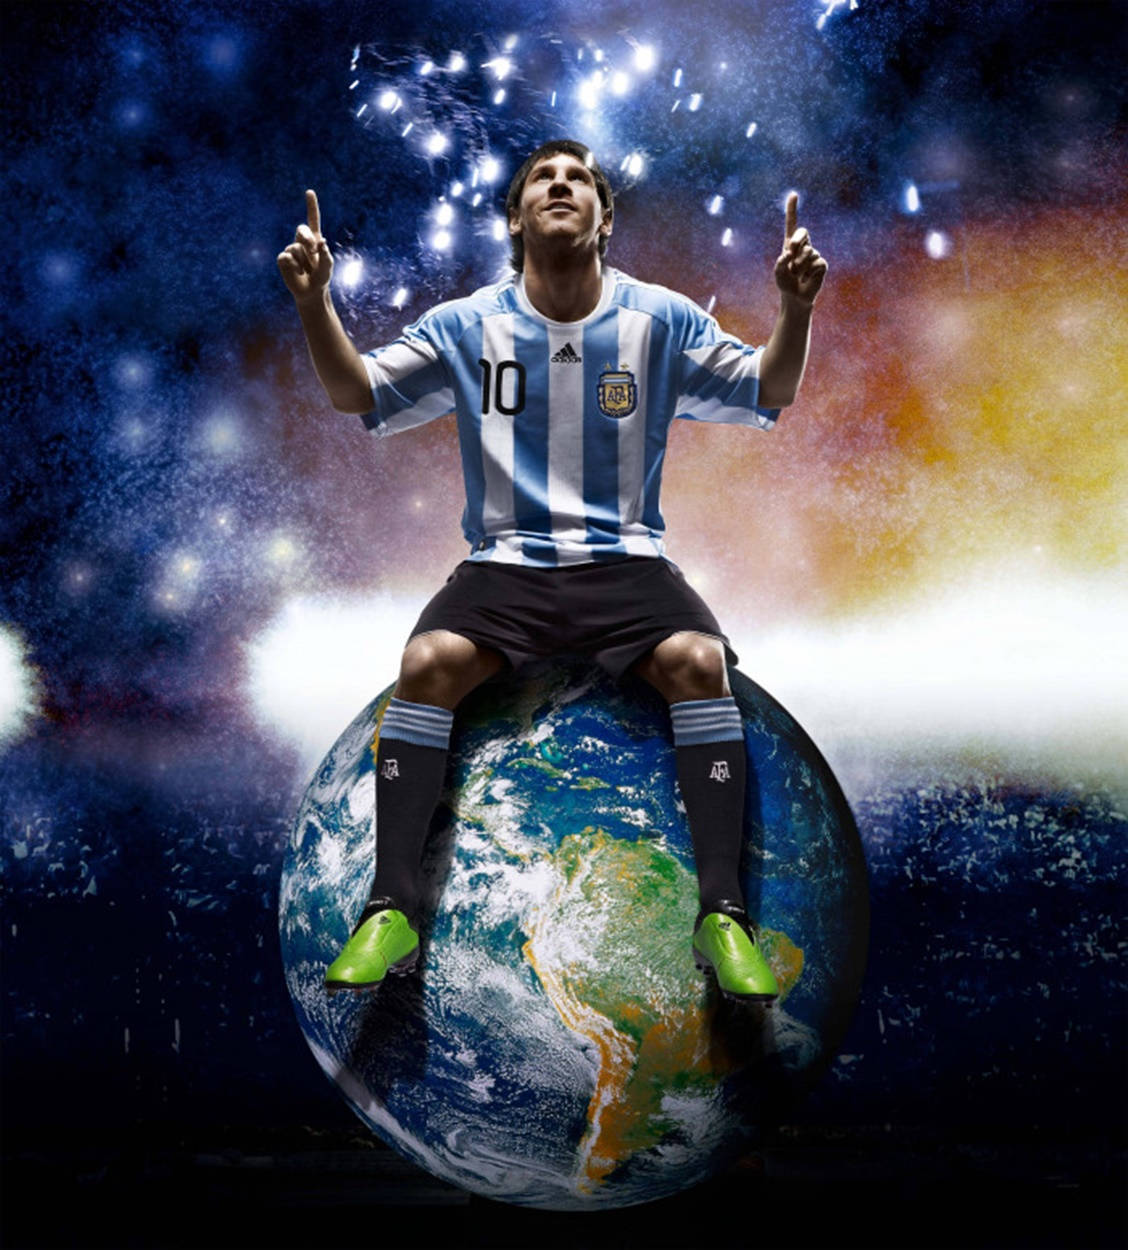 Hãy khám phá hình nền mặt đất Messi Argentina đầy hào quang và mạnh mẽ! Với đôi chân nhỏ bé, cậu bé ấy đã tạo ra những di sản rực rỡ cho quốc gia của mình. Hãy cùng ngắm nhìn hình nền độc đáo này và ghi lại những khoảnh khắc đáng nhớ của anh chàng Messi trên sân cỏ.